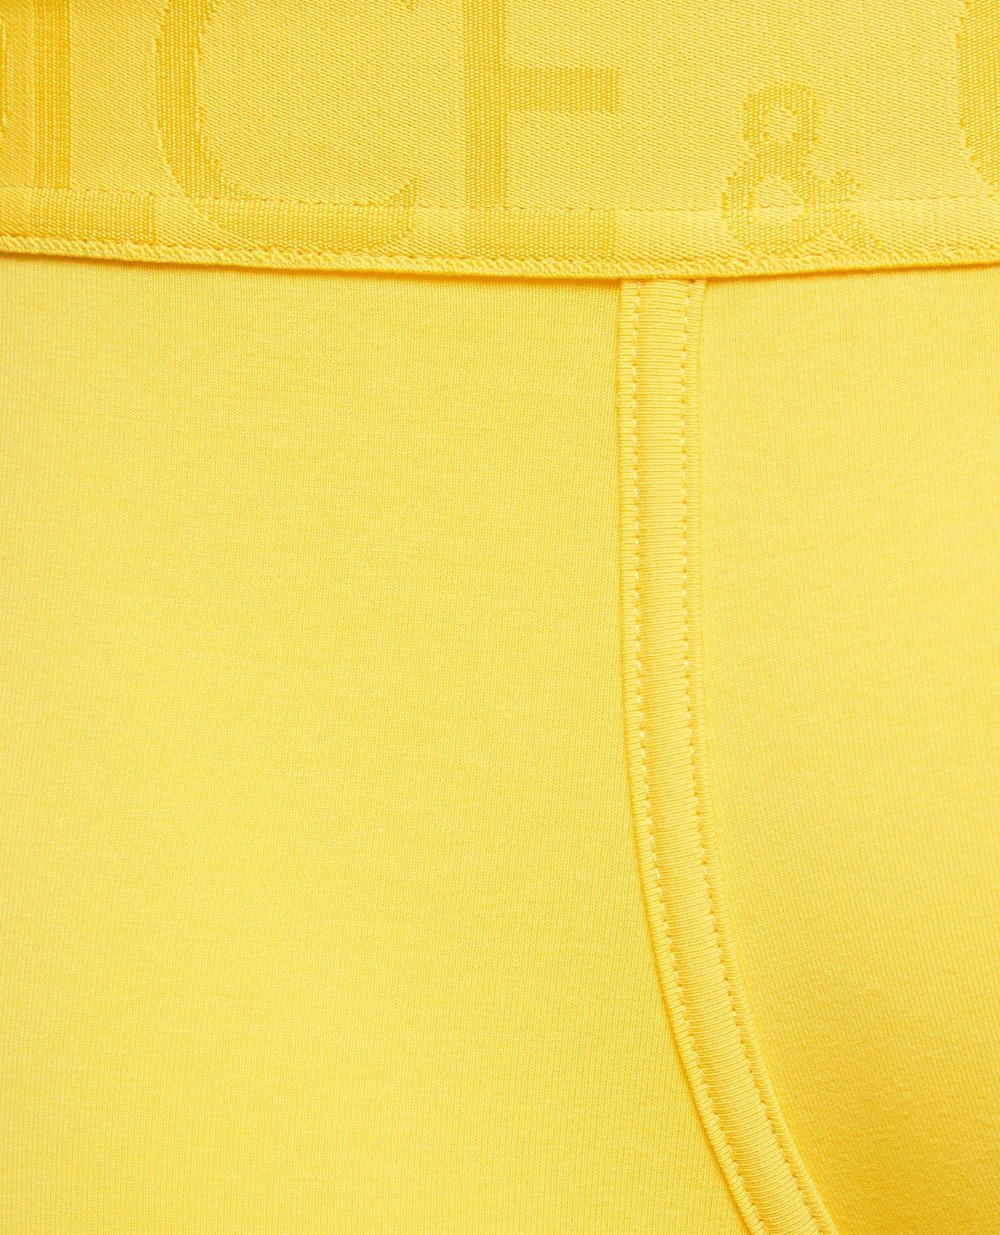 Боксеры Dolce&Gabbana M4D04J-OUAIG, желтый цвет • Купить в интернет-магазине Kameron